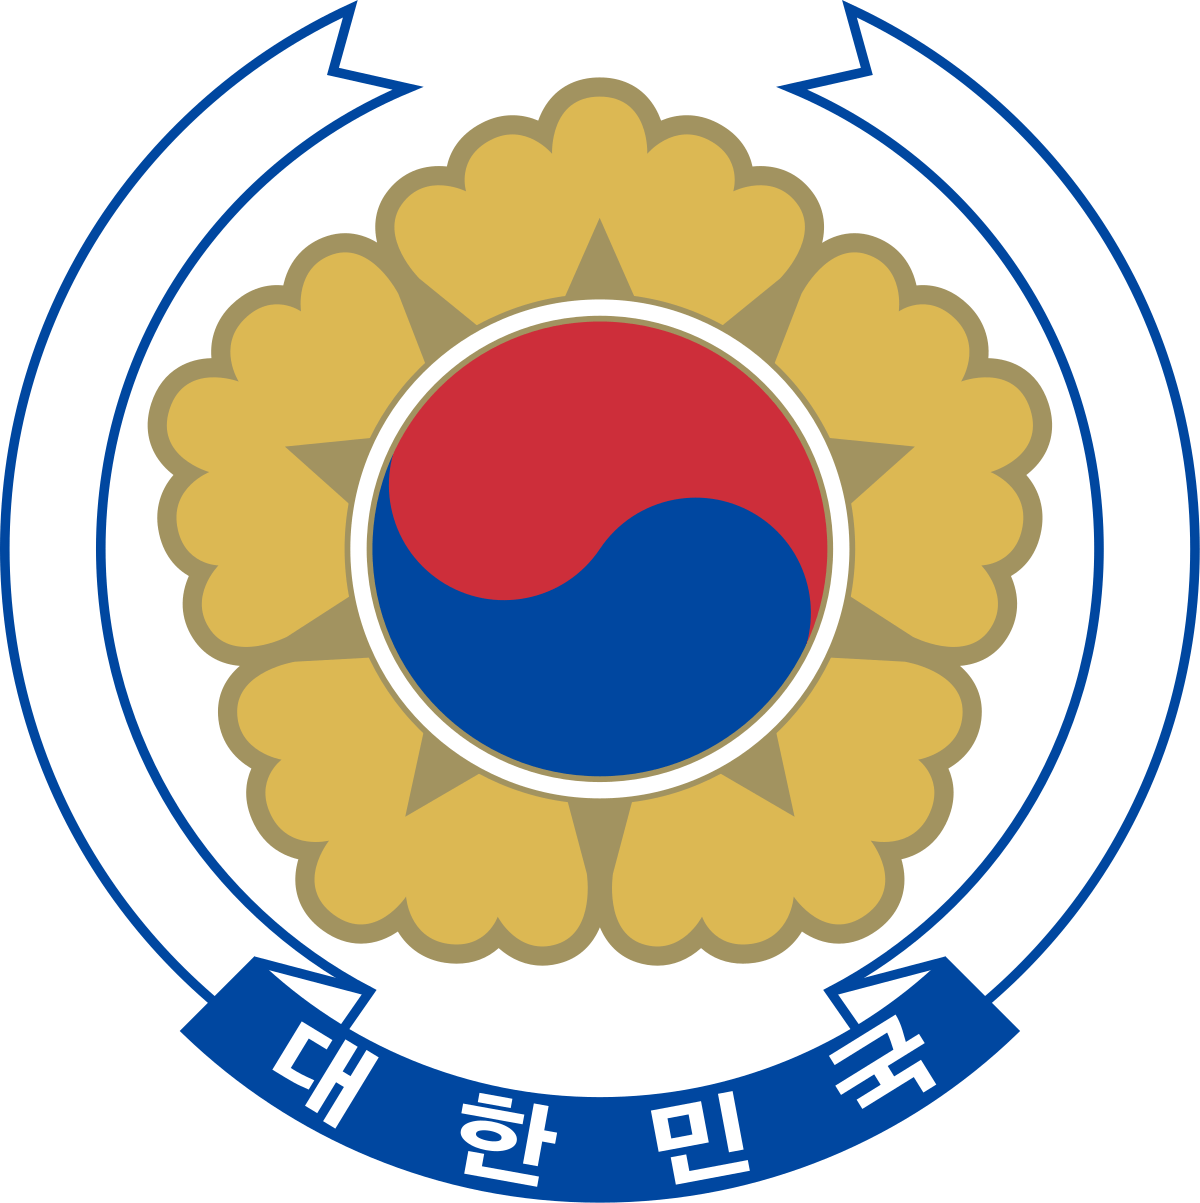 South Korea National Emblem logo.